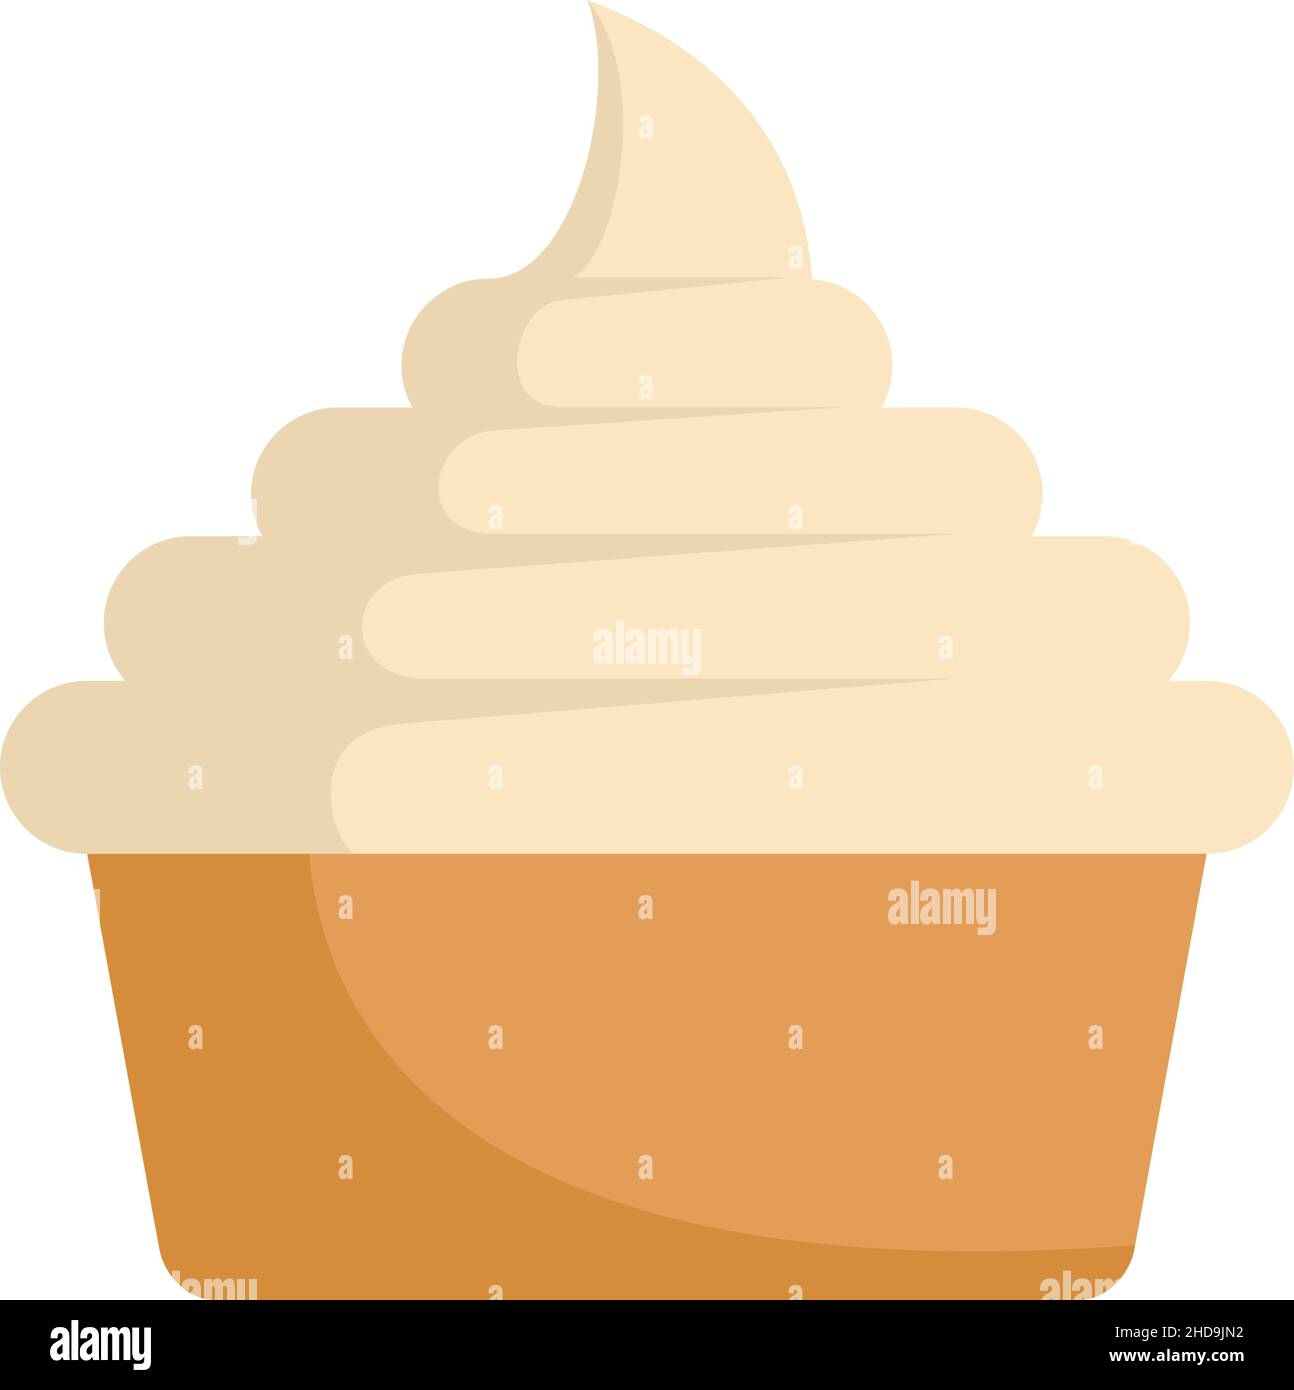 Milchkuchensymbol. Flache Darstellung des Vektorsymbols für Milchkuchenkuchen auf weißem Hintergrund Stock Vektor